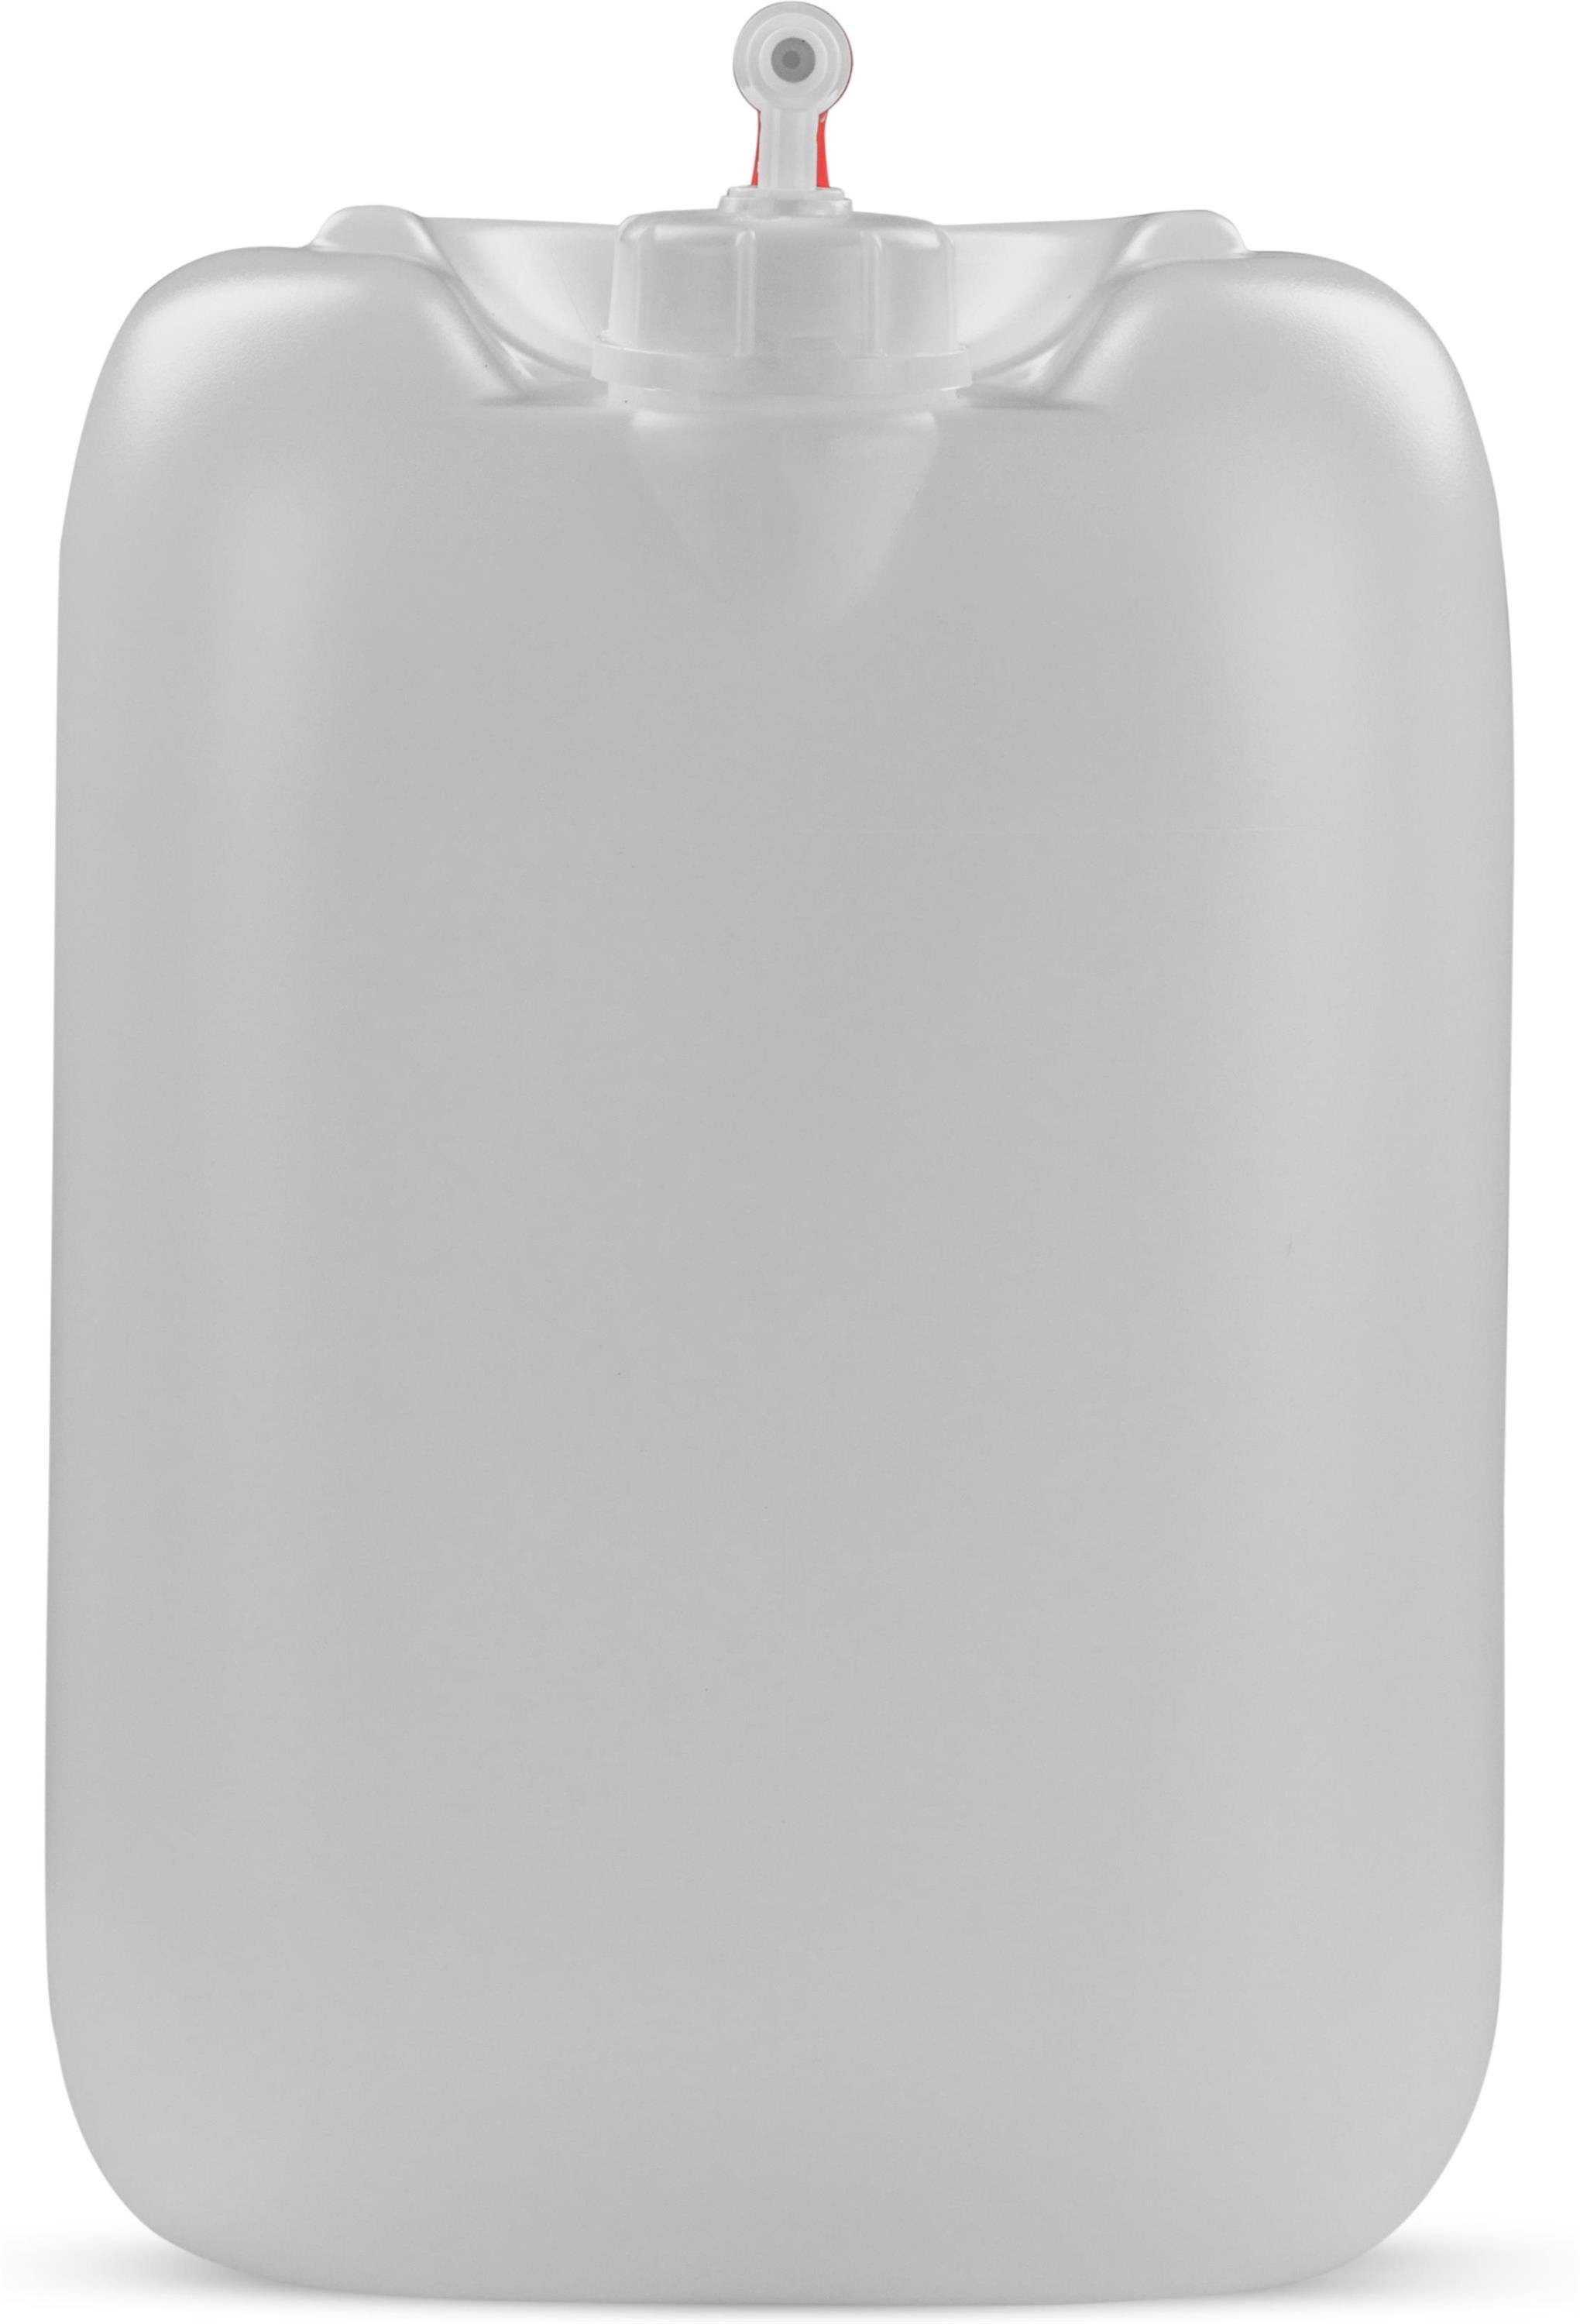 normani Kanister Wasserkanister Carry 30 Liter (1 St), Wasserbehälter  Trinkwasserkanister Campingkanister Outdoorkanister mit Hahn  Lebensmittelecht